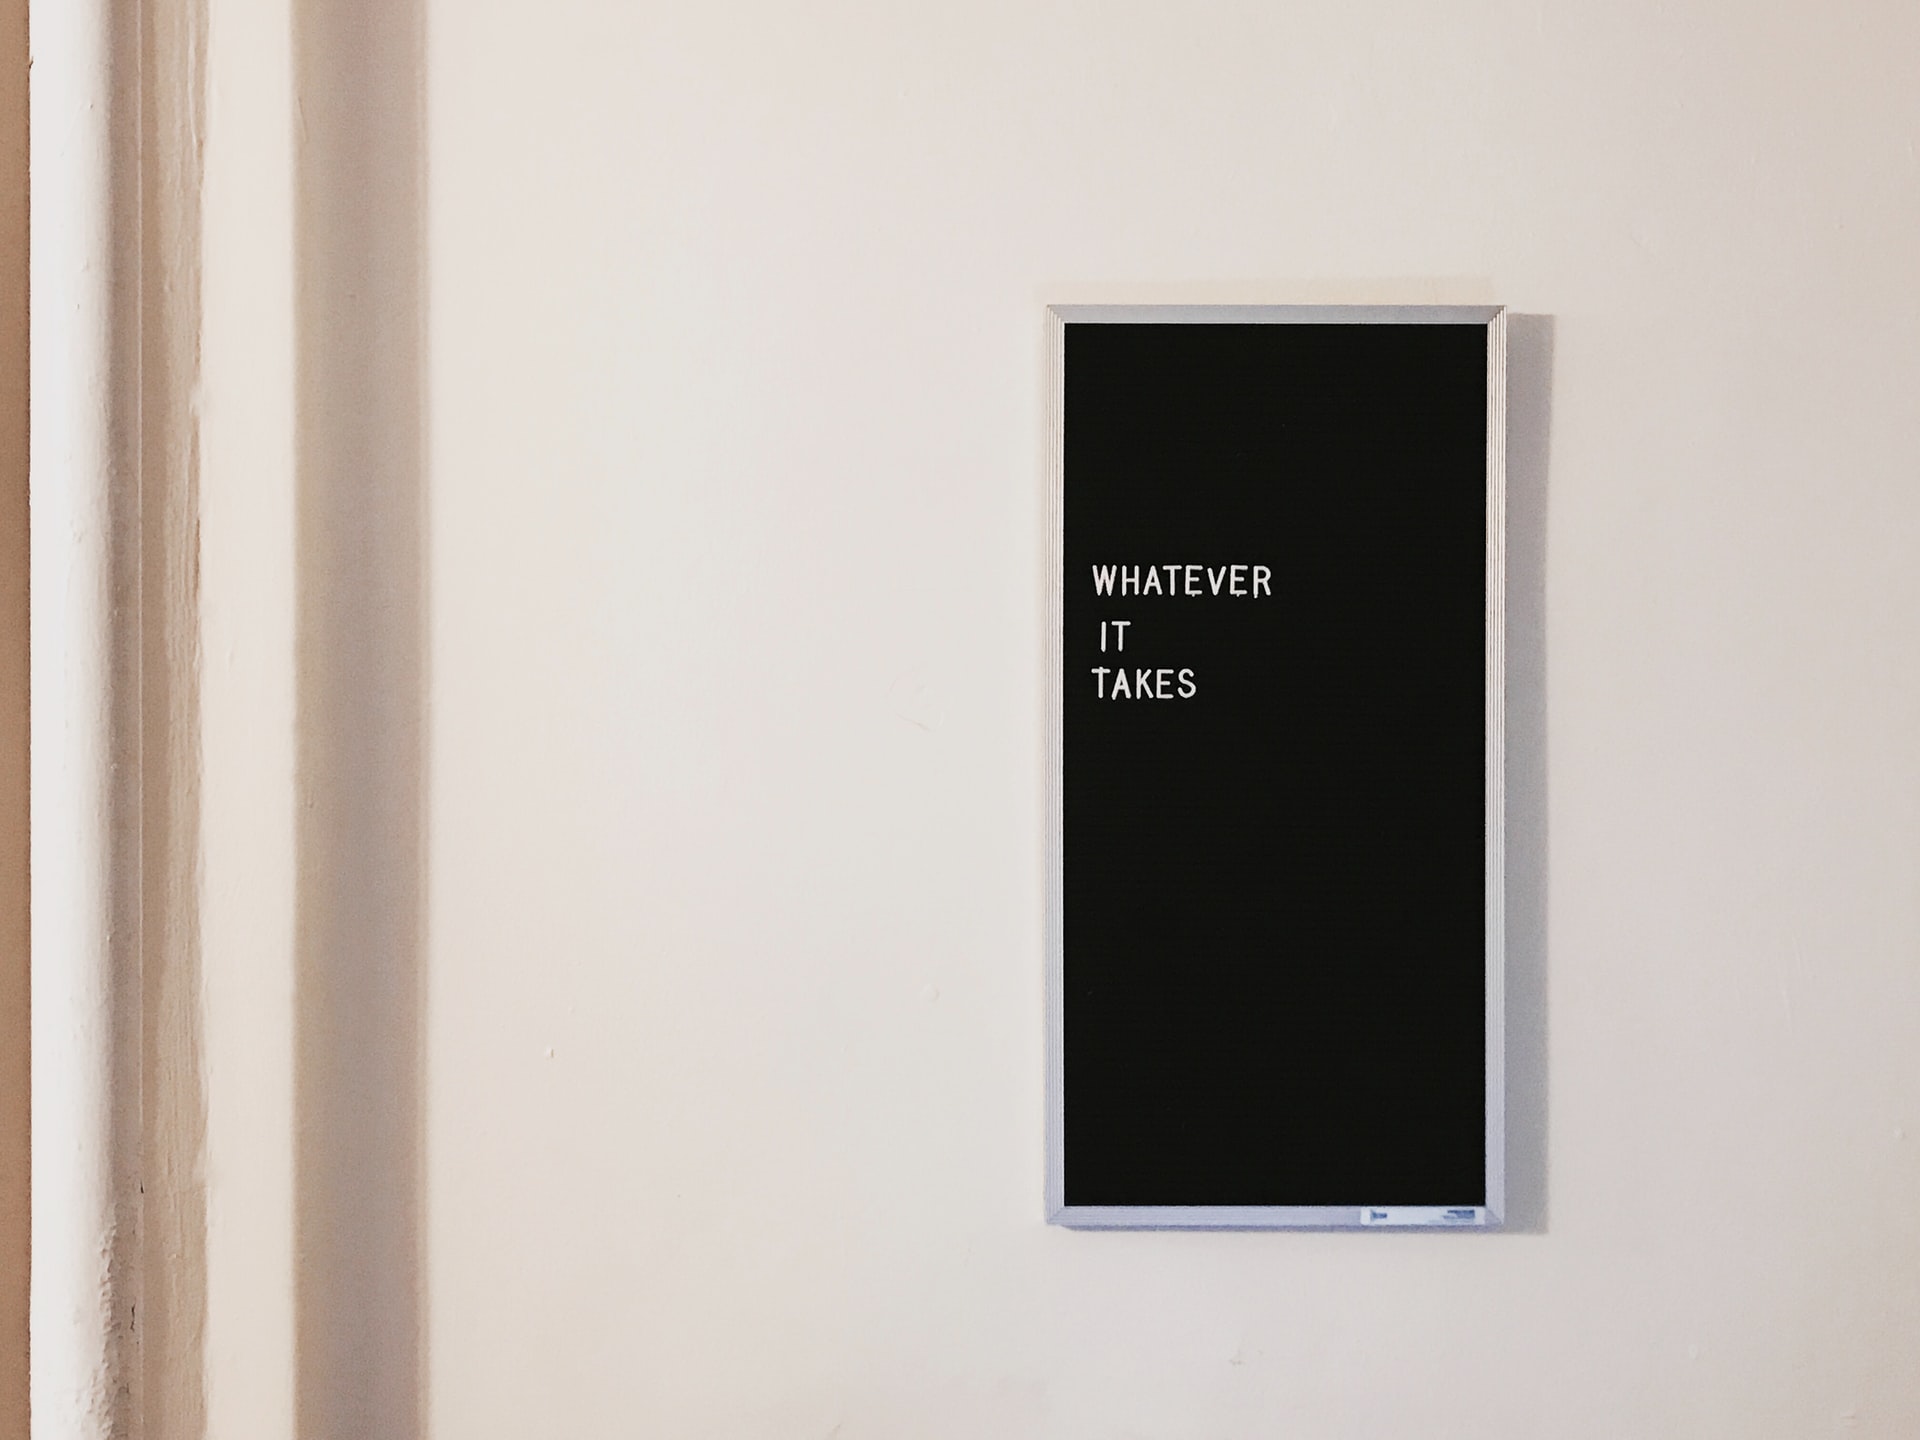 Ein Bild mit der Aufschrift "Whatever it takes" hängt an einer Wand